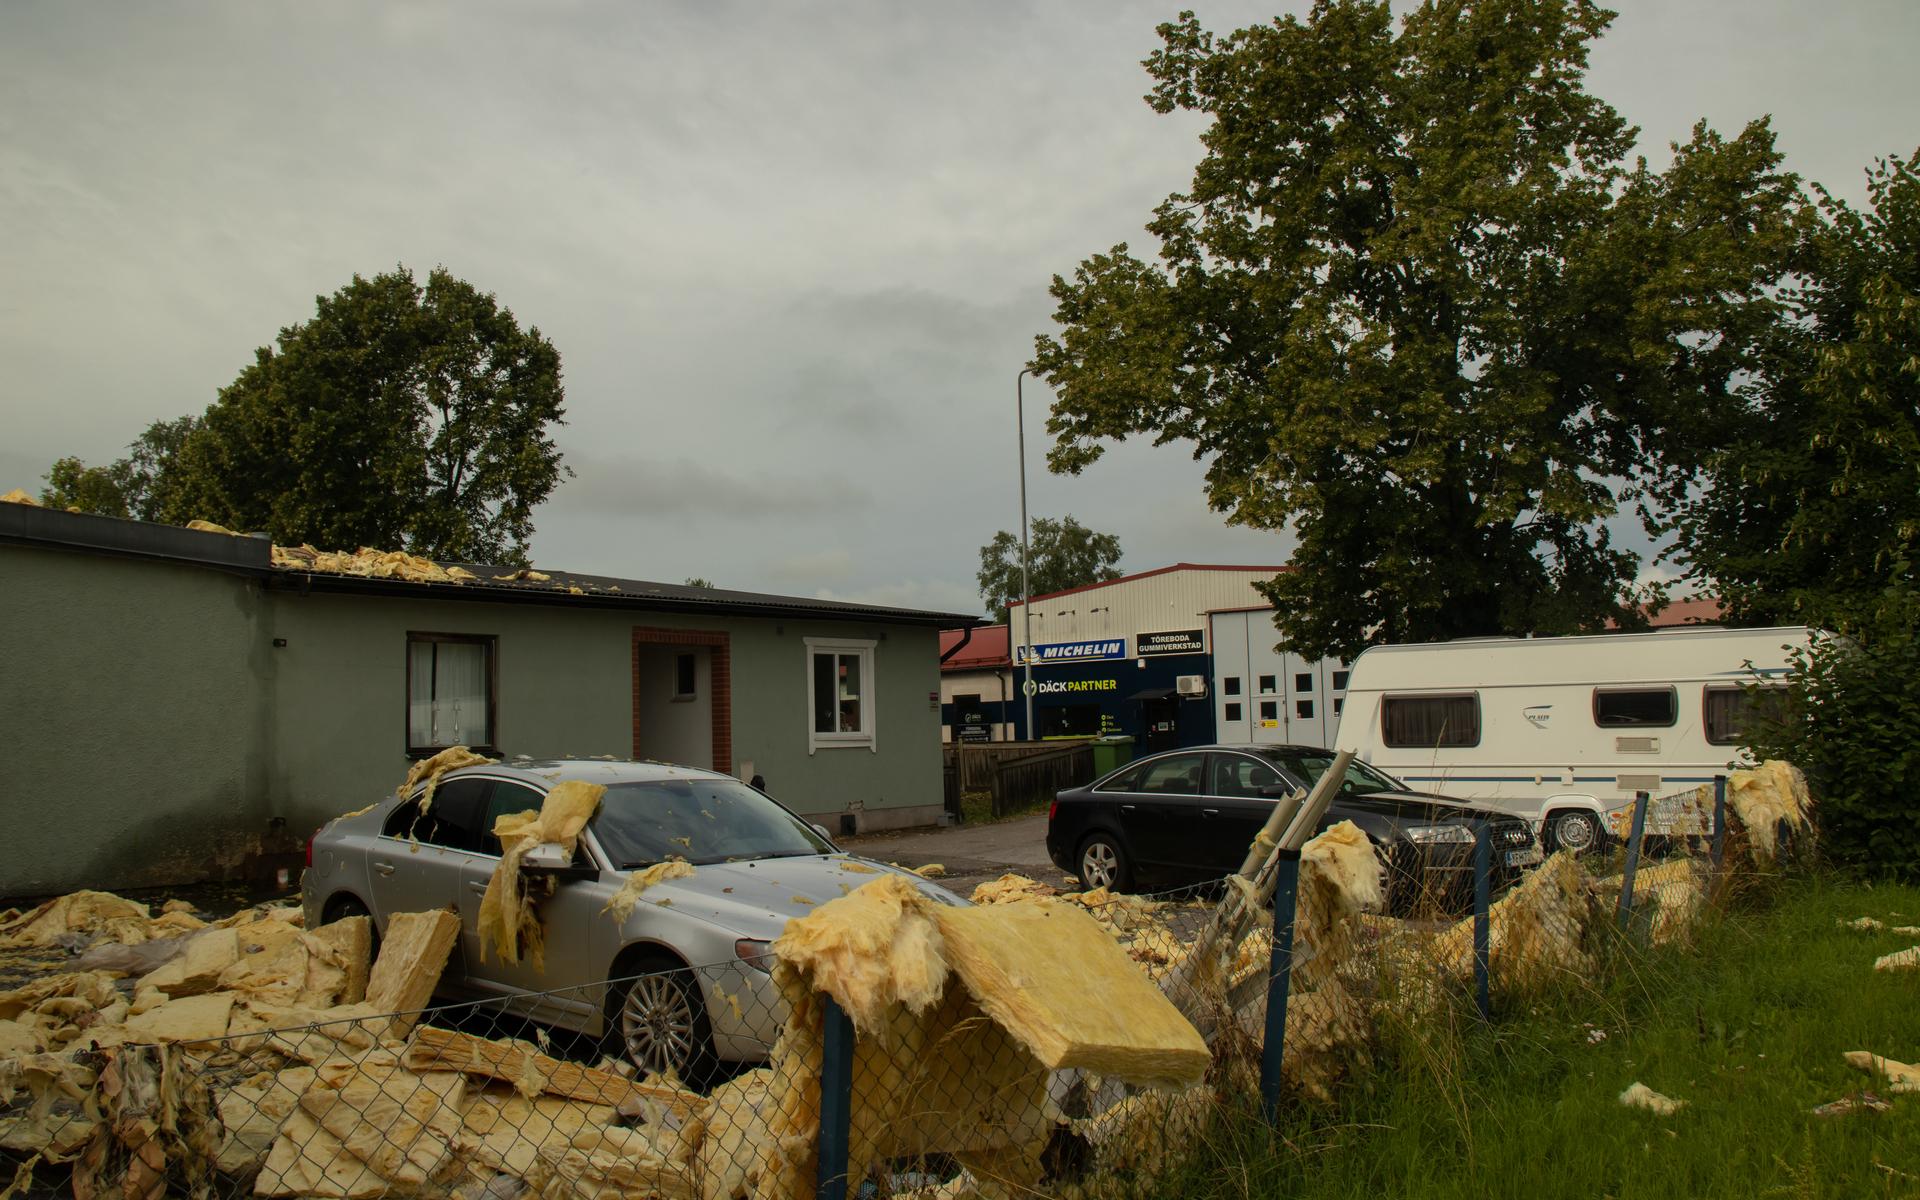 Efterdyningarna av ovädret i Töreboda.